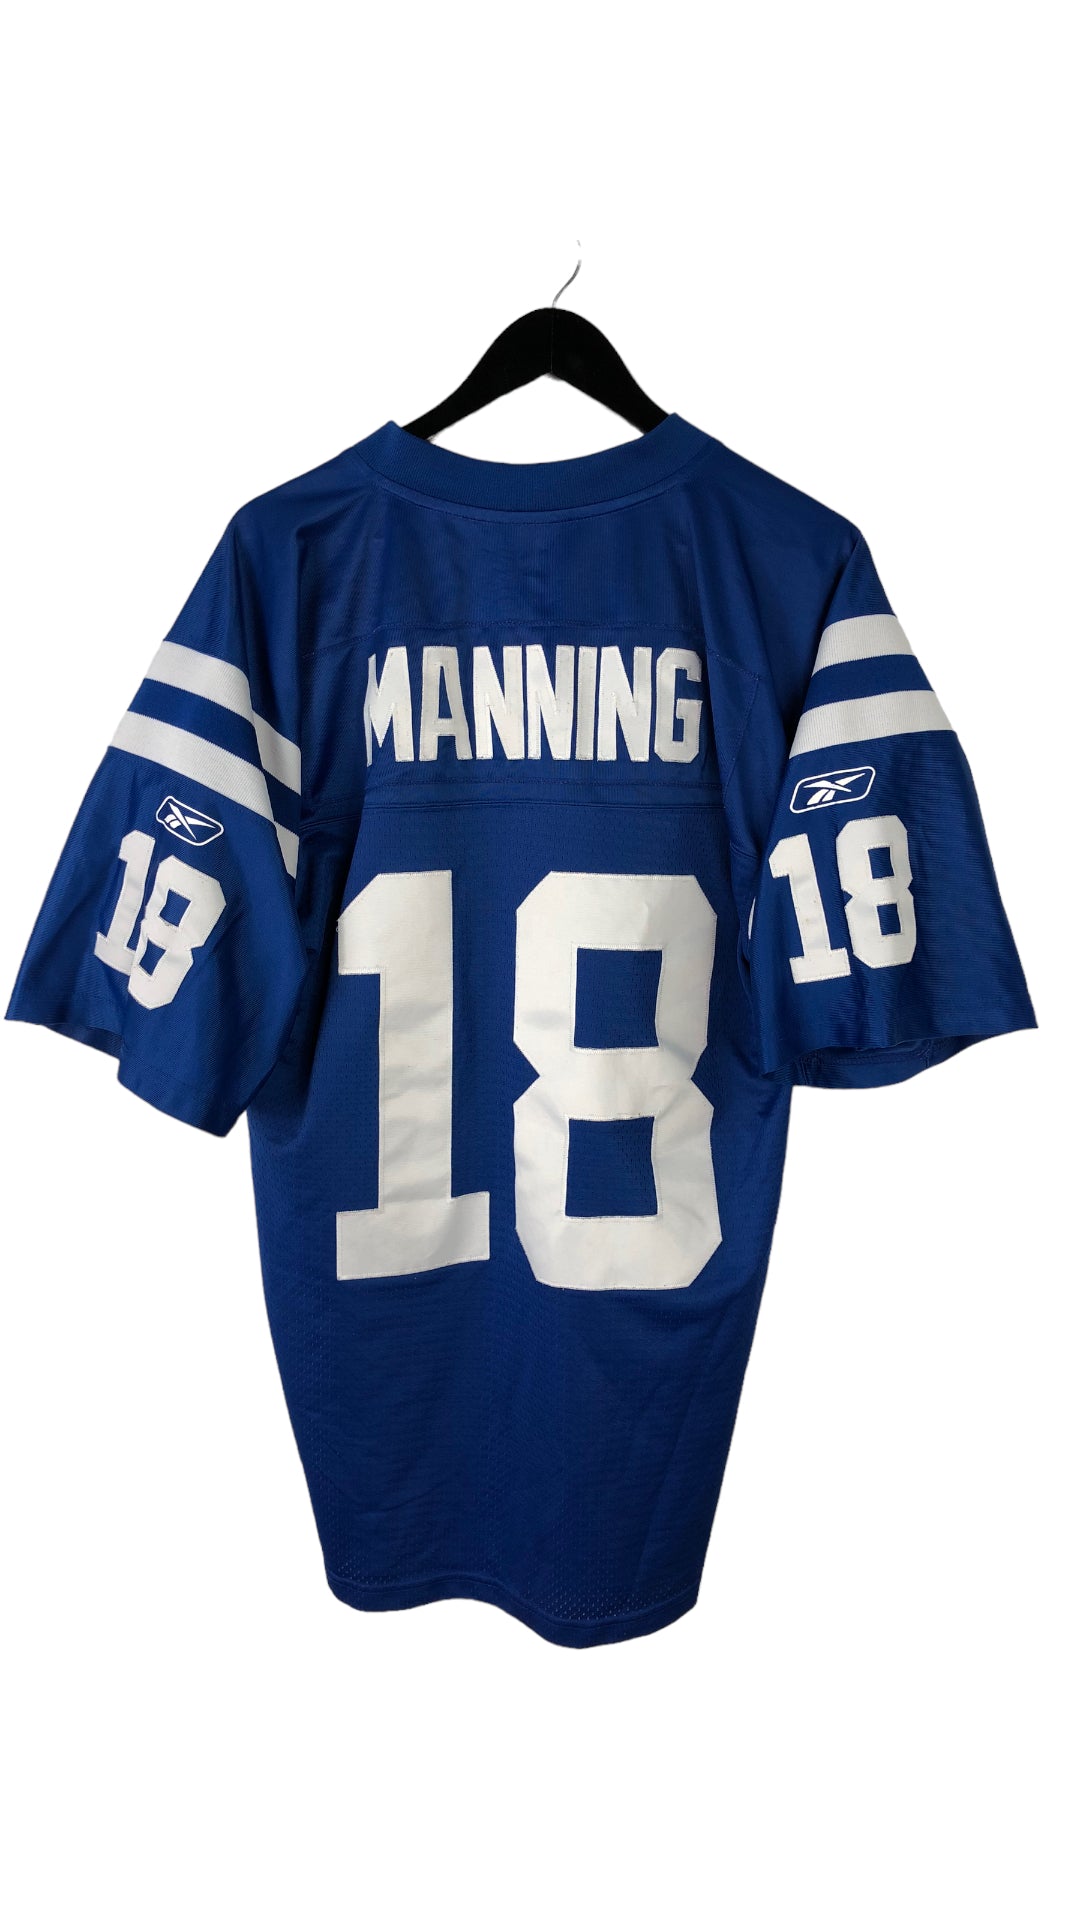 VTG NFL Peyton Manning Jersey Sz M